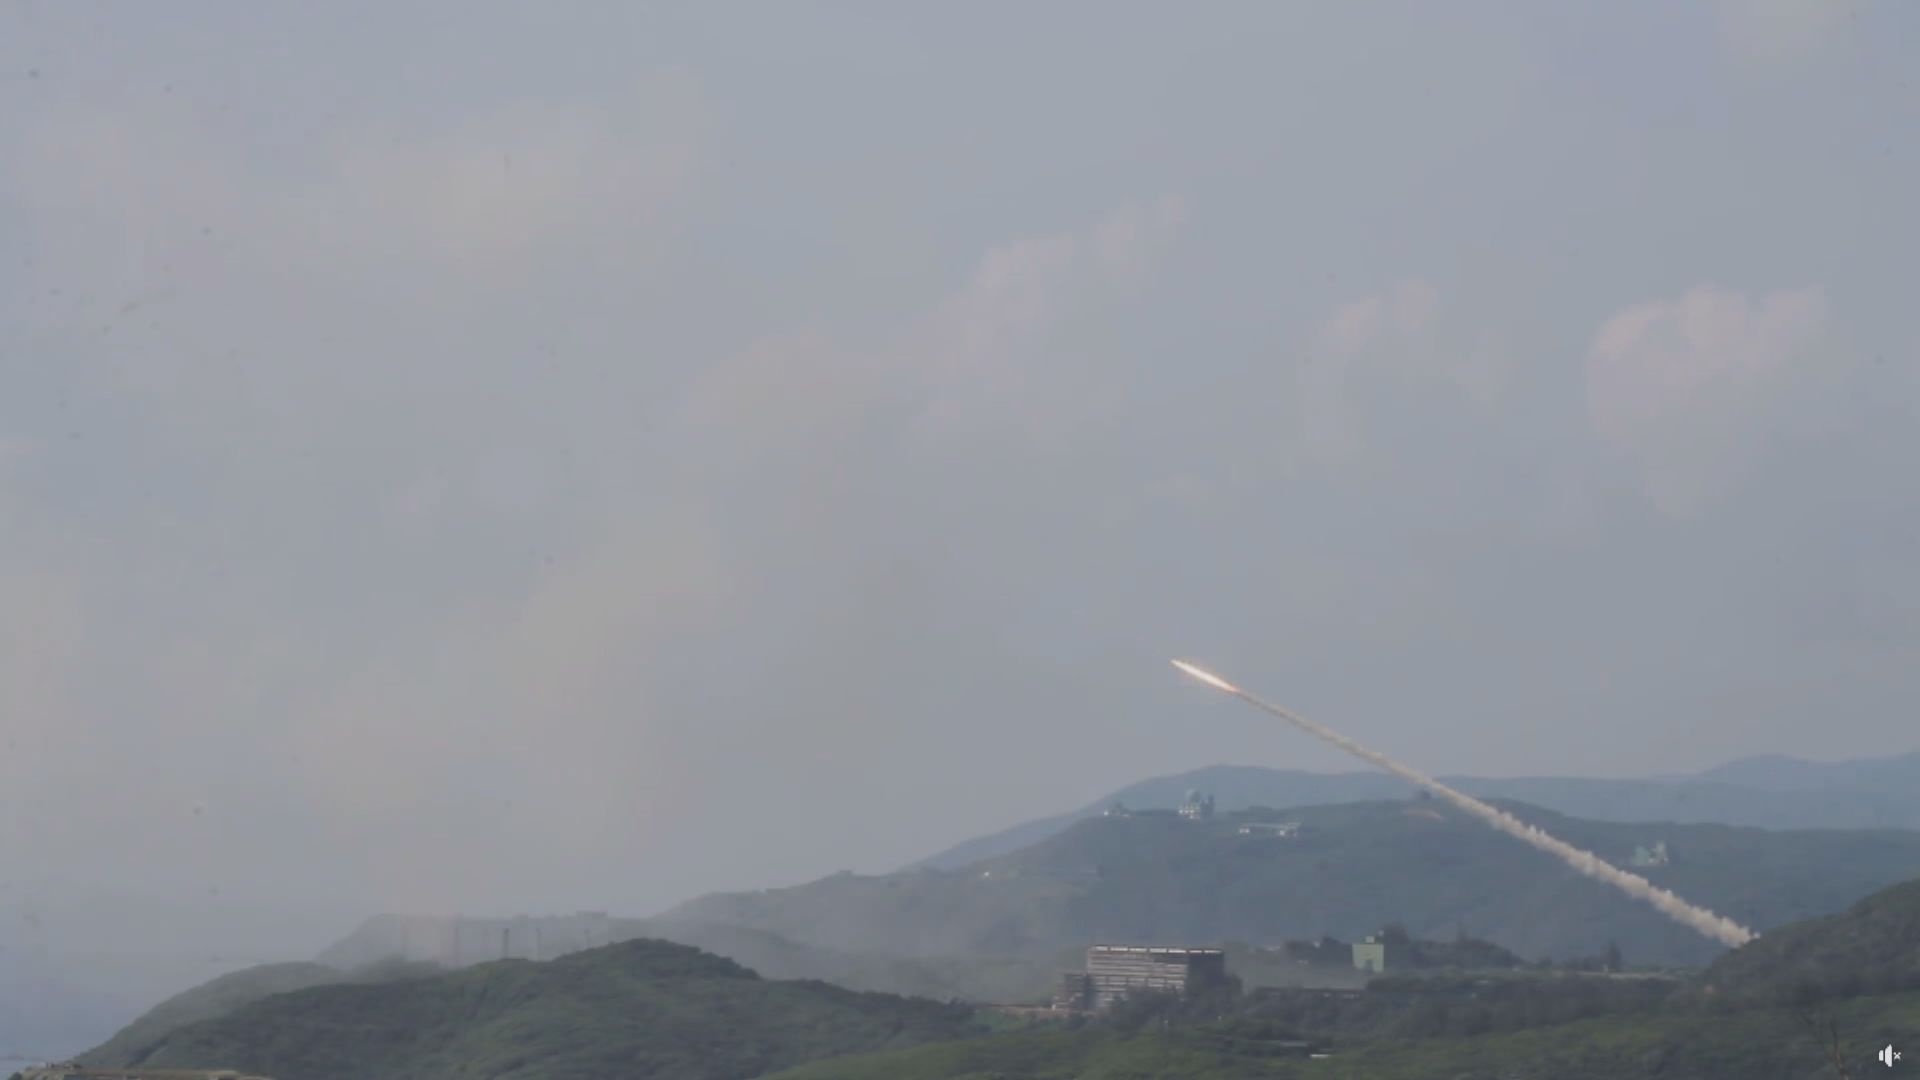 台灣一枚火箭炮在發射箱內爆炸 未有造成傷亡